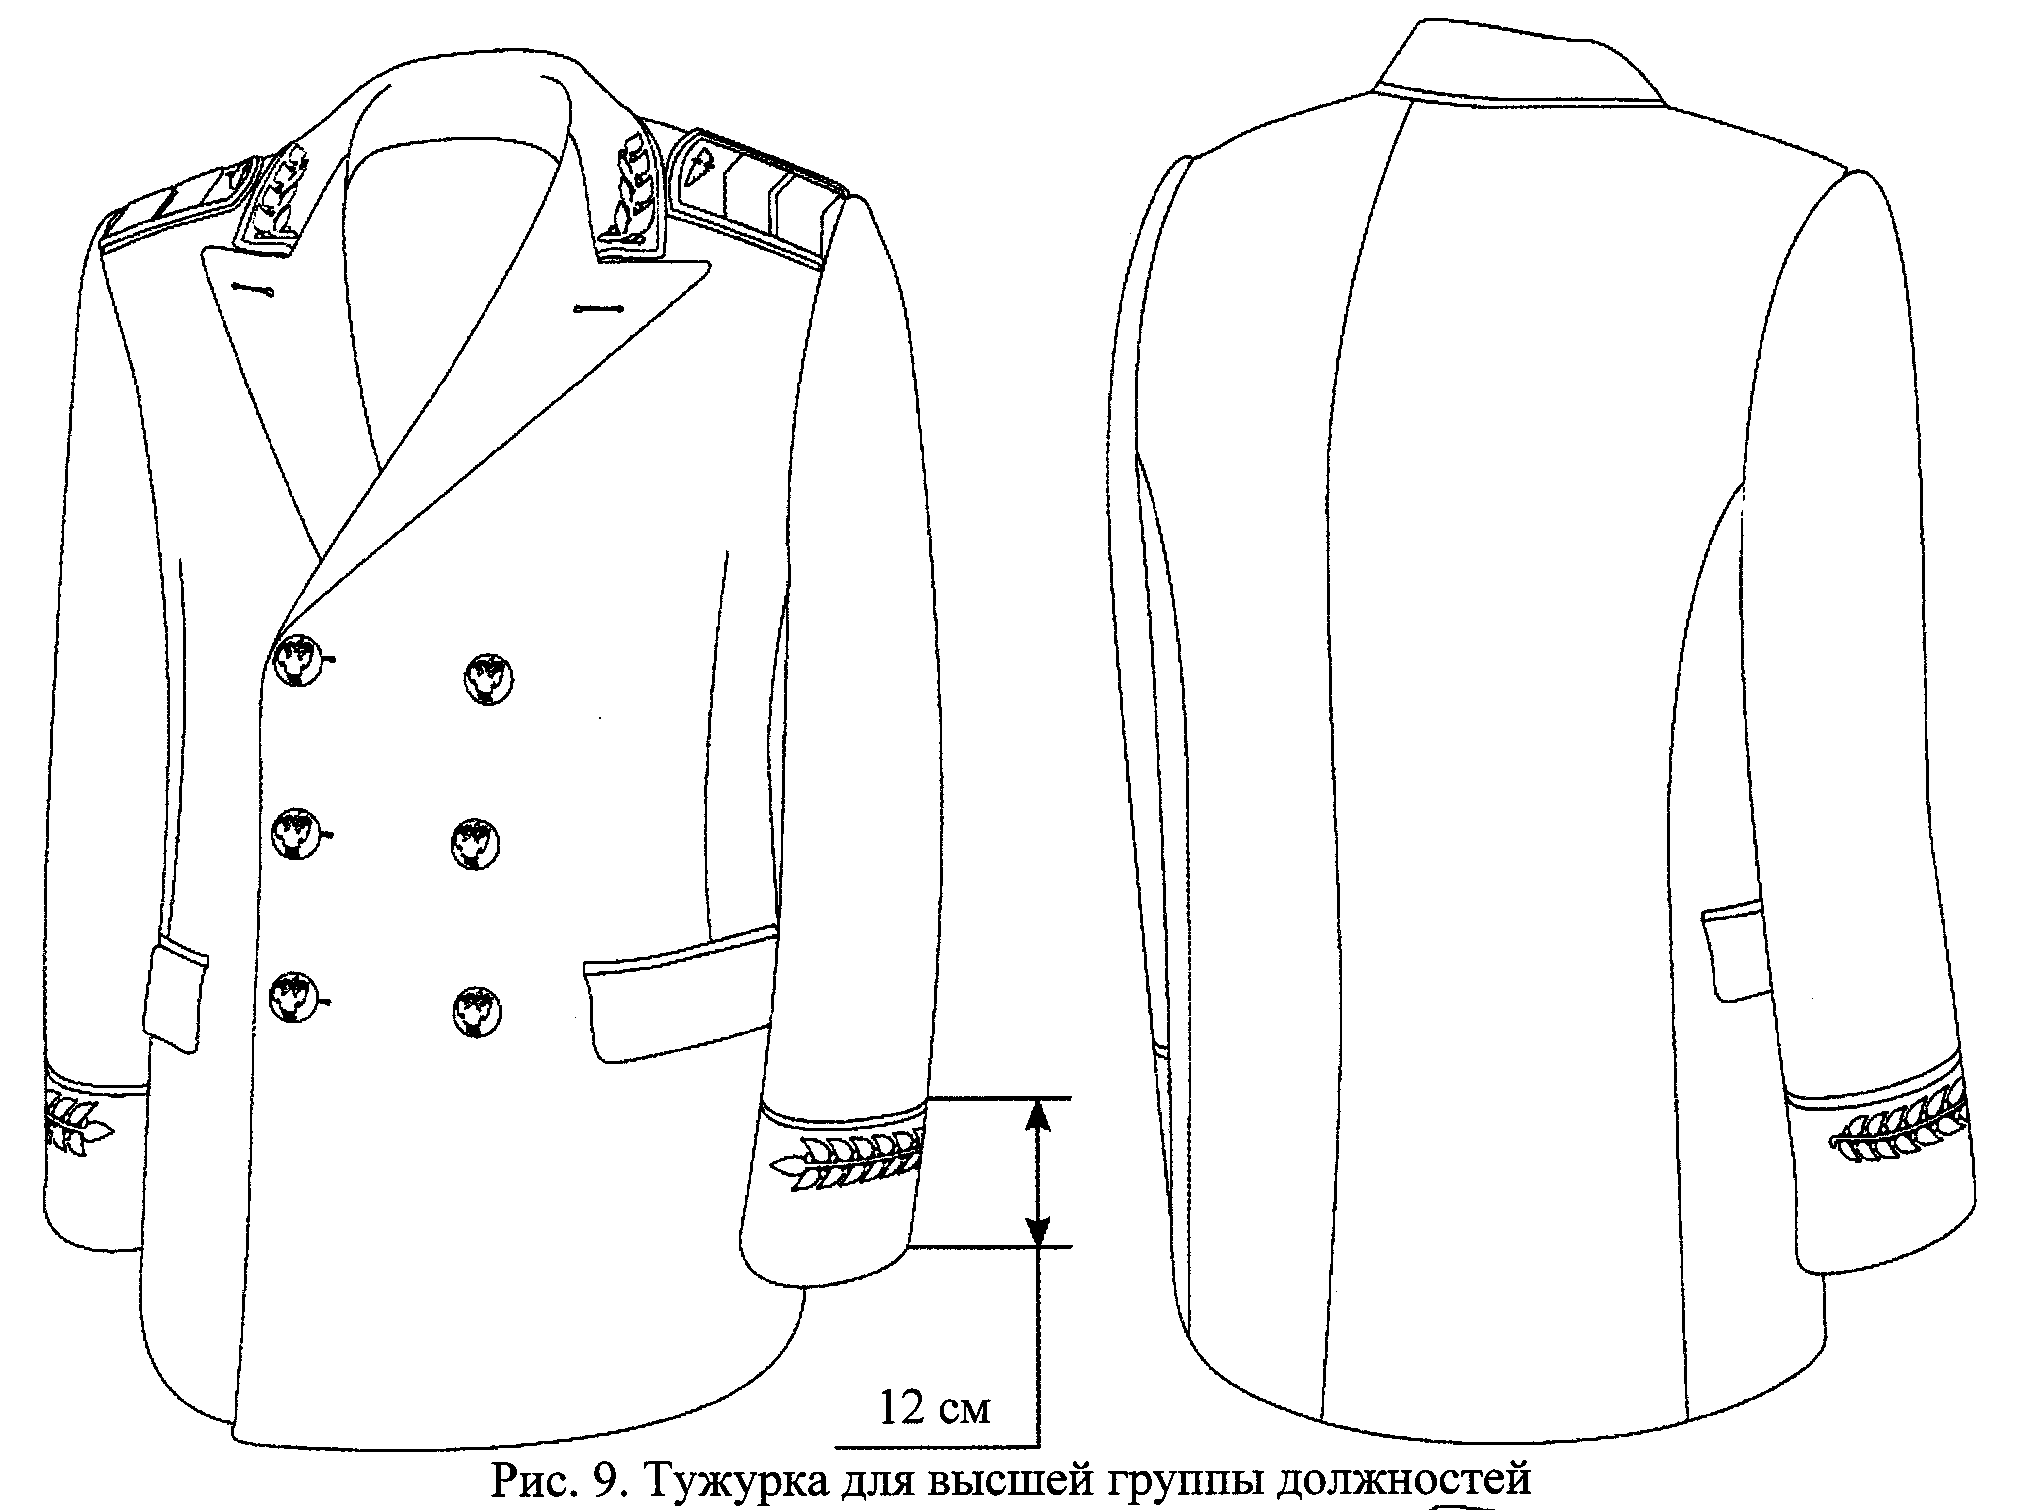 Двубортная домашняя или форменная куртка. Китель. Технический рисунок пиджака. Пиджак мужской рисунок. Технический эскиз пиджака сбоку.